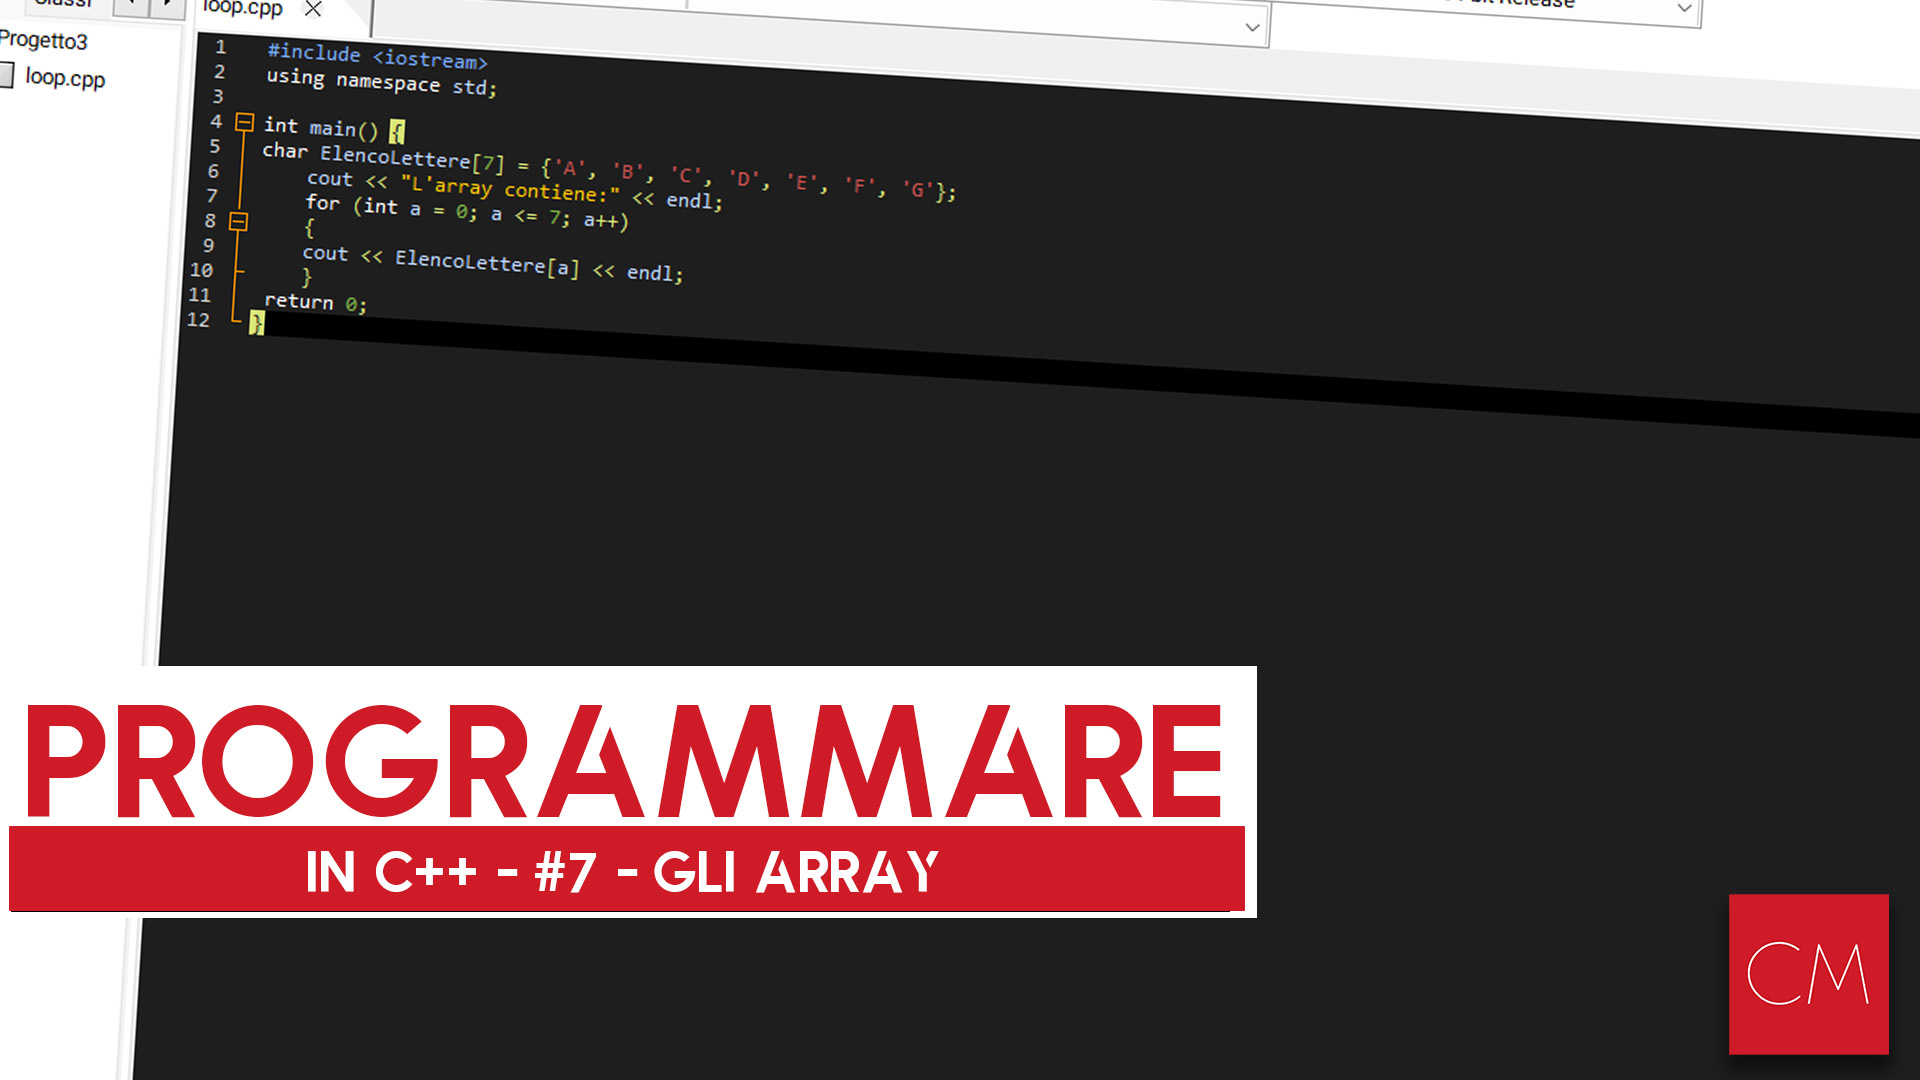 Imparare a programmare in C++ - Gli Array